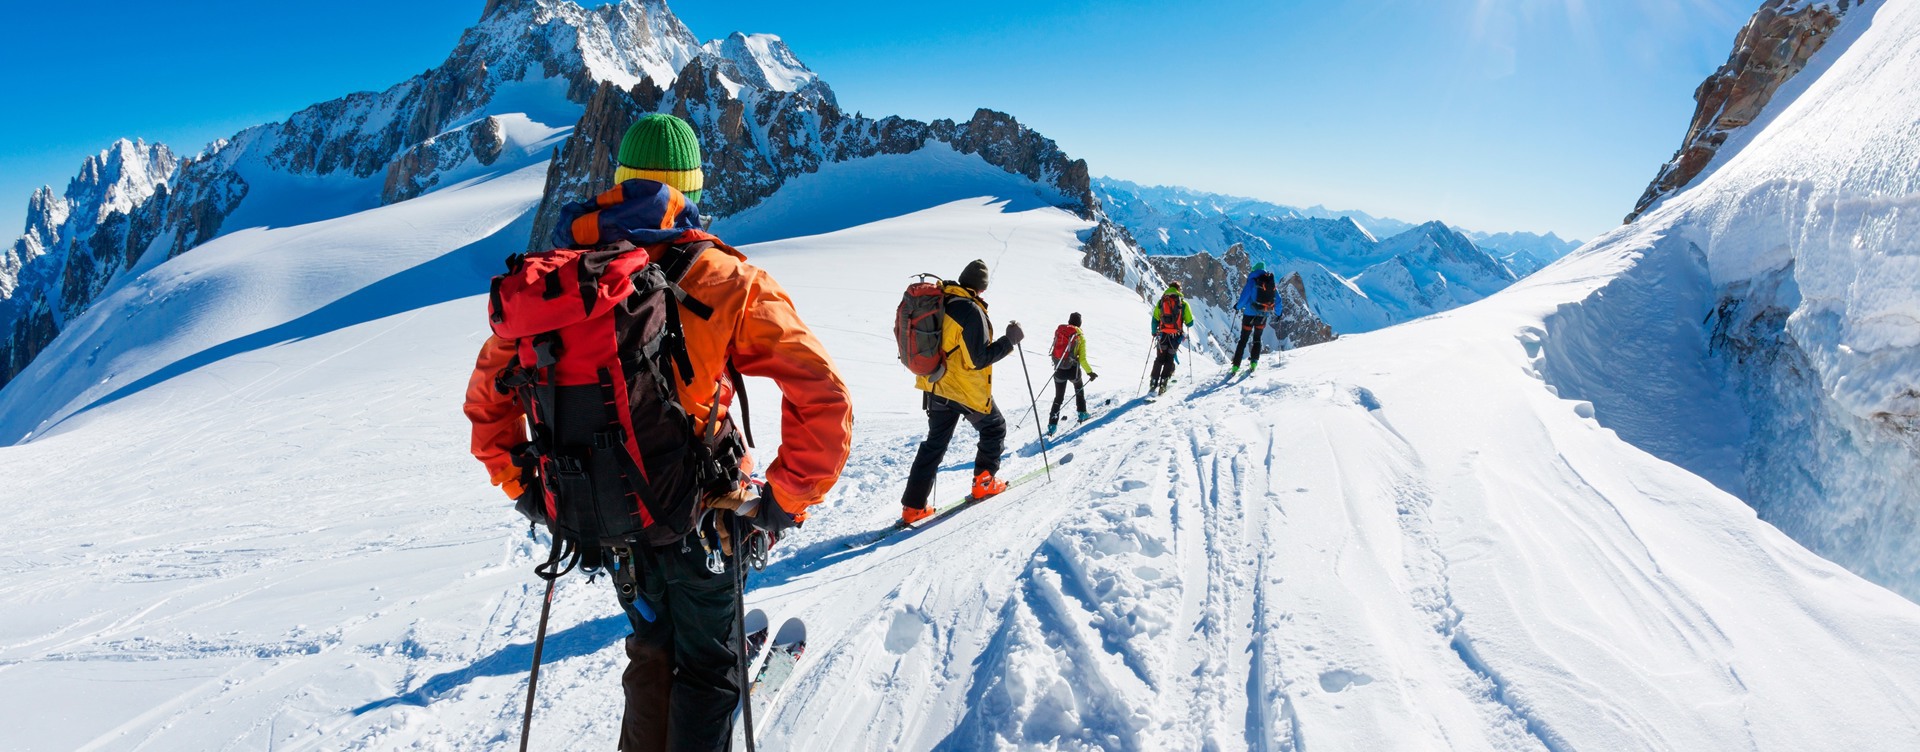 Beleef een geweldige wintersport in Vallorcine
met goede wintersportuitrusting